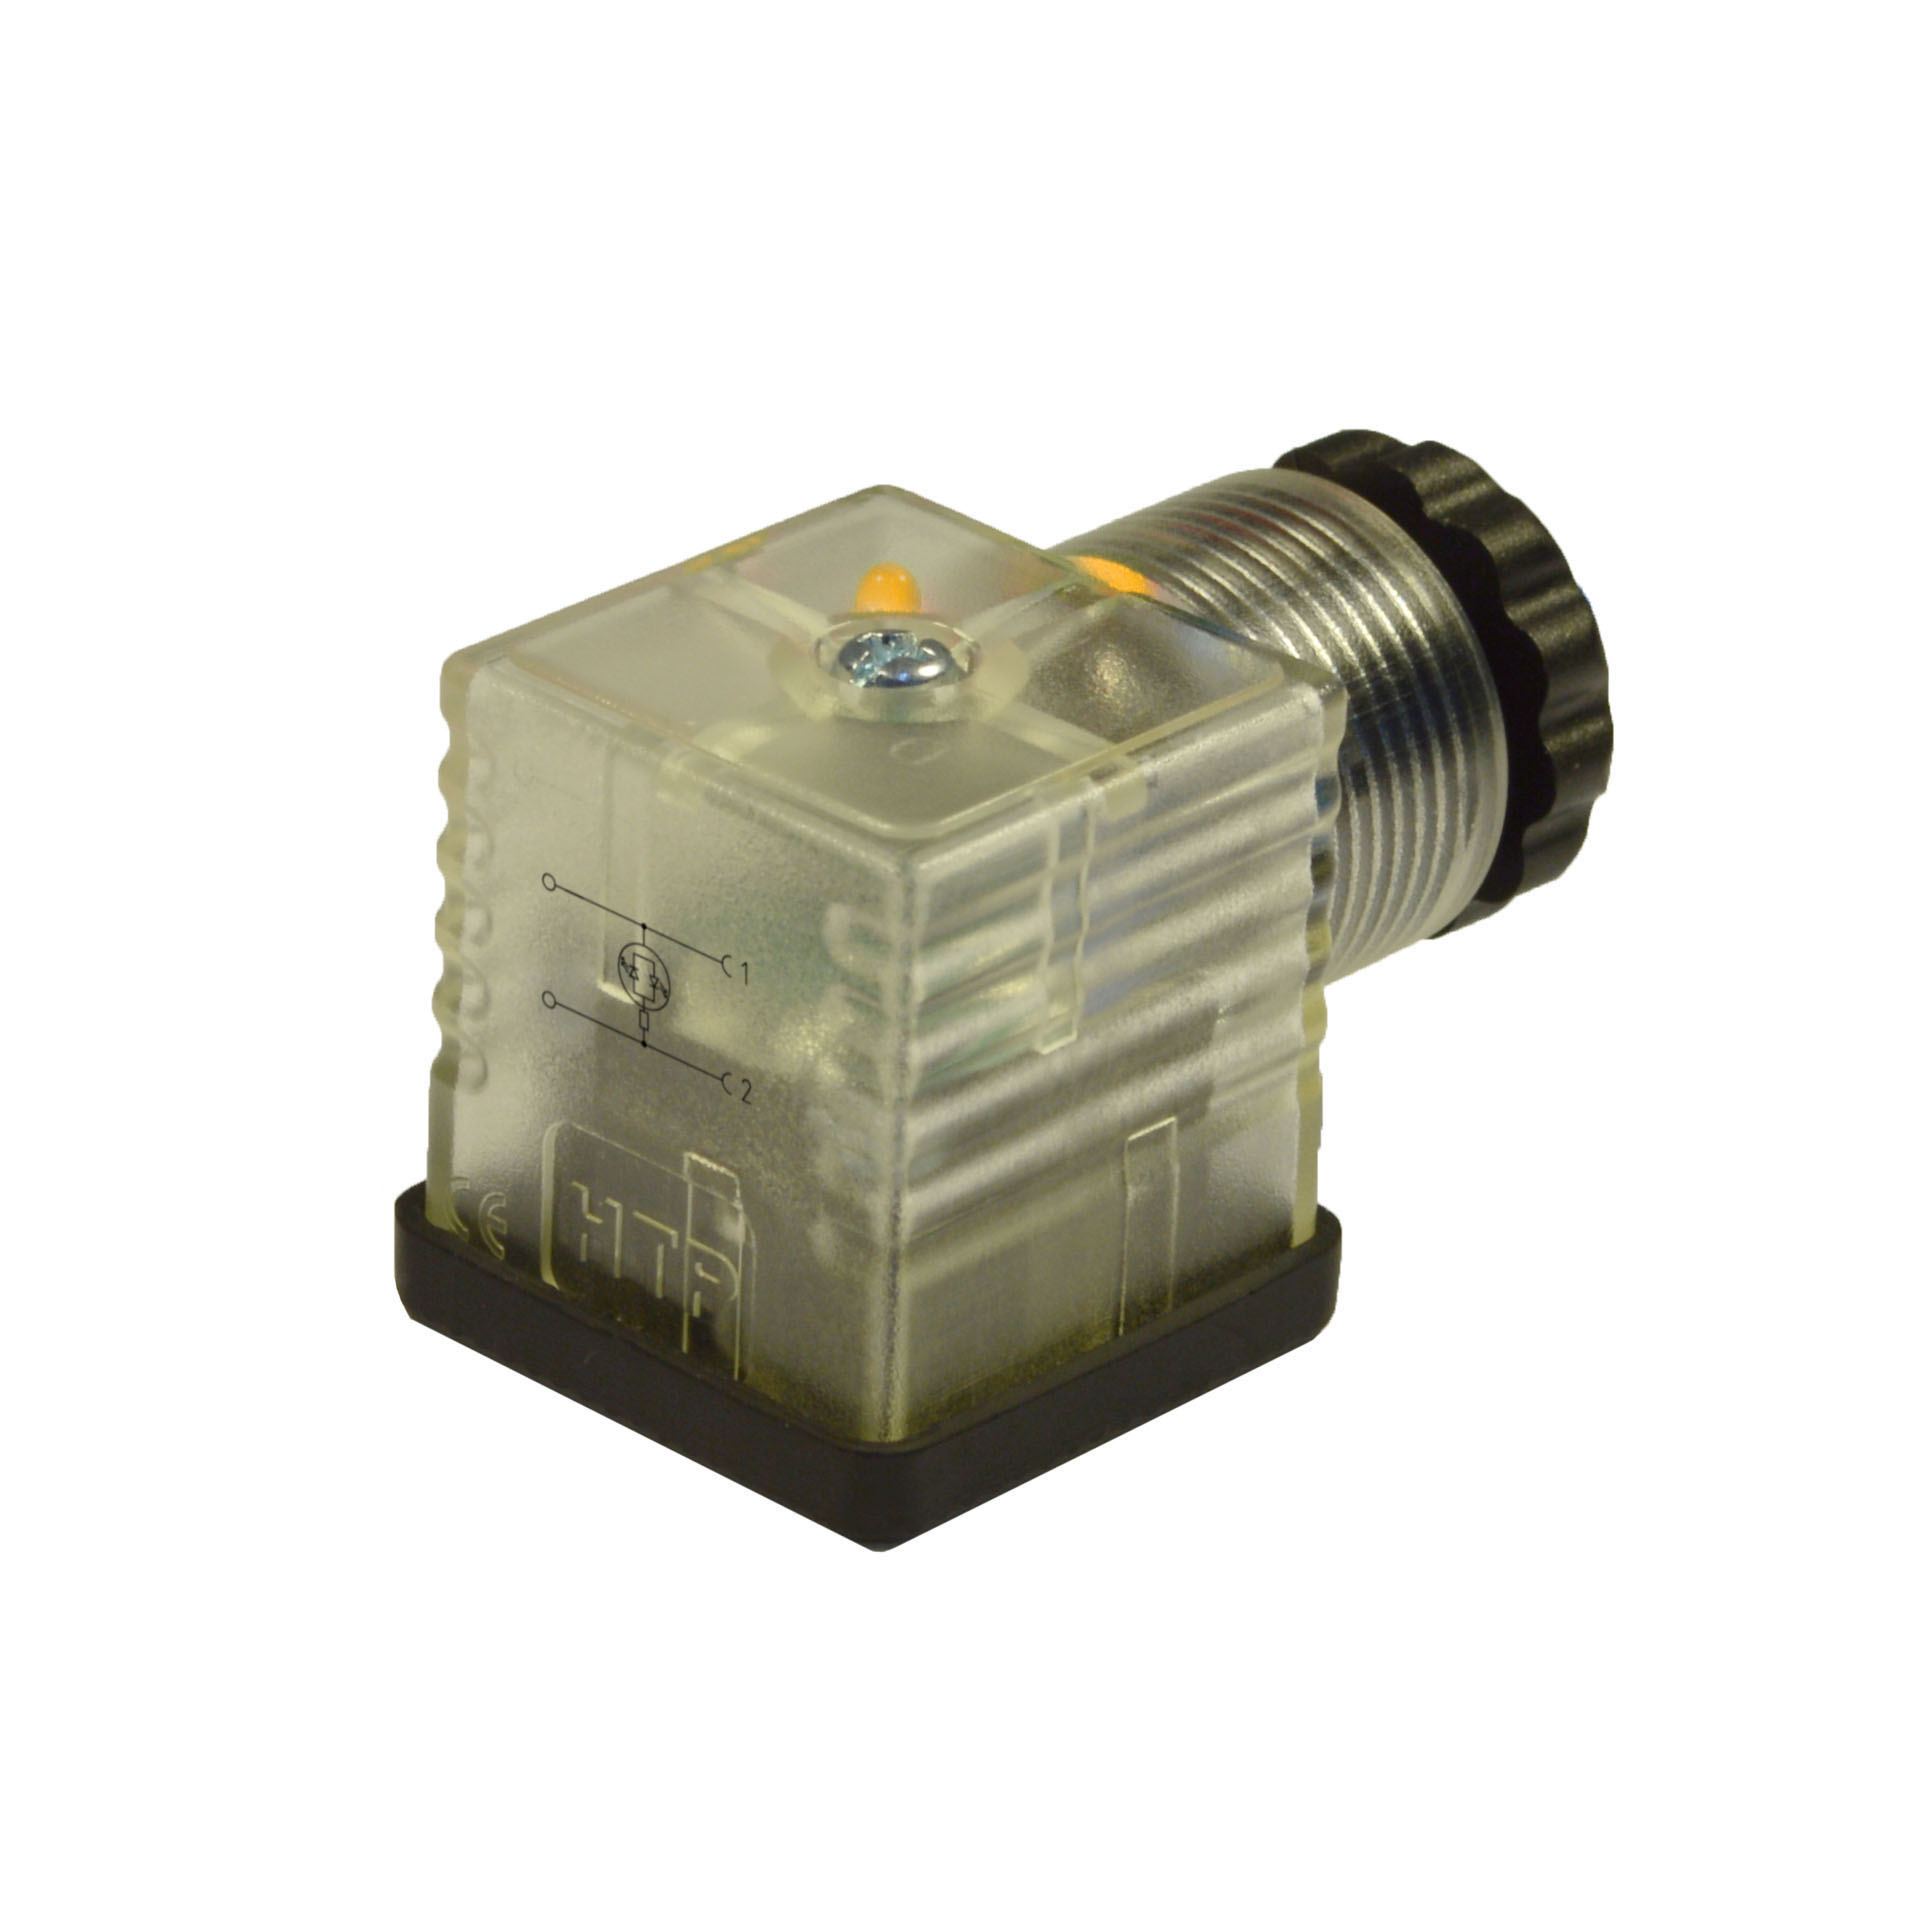 EN175301-803/A a cablare,2p+T(h.12),LED giallo,115VAC/DC,PG9/11unif.